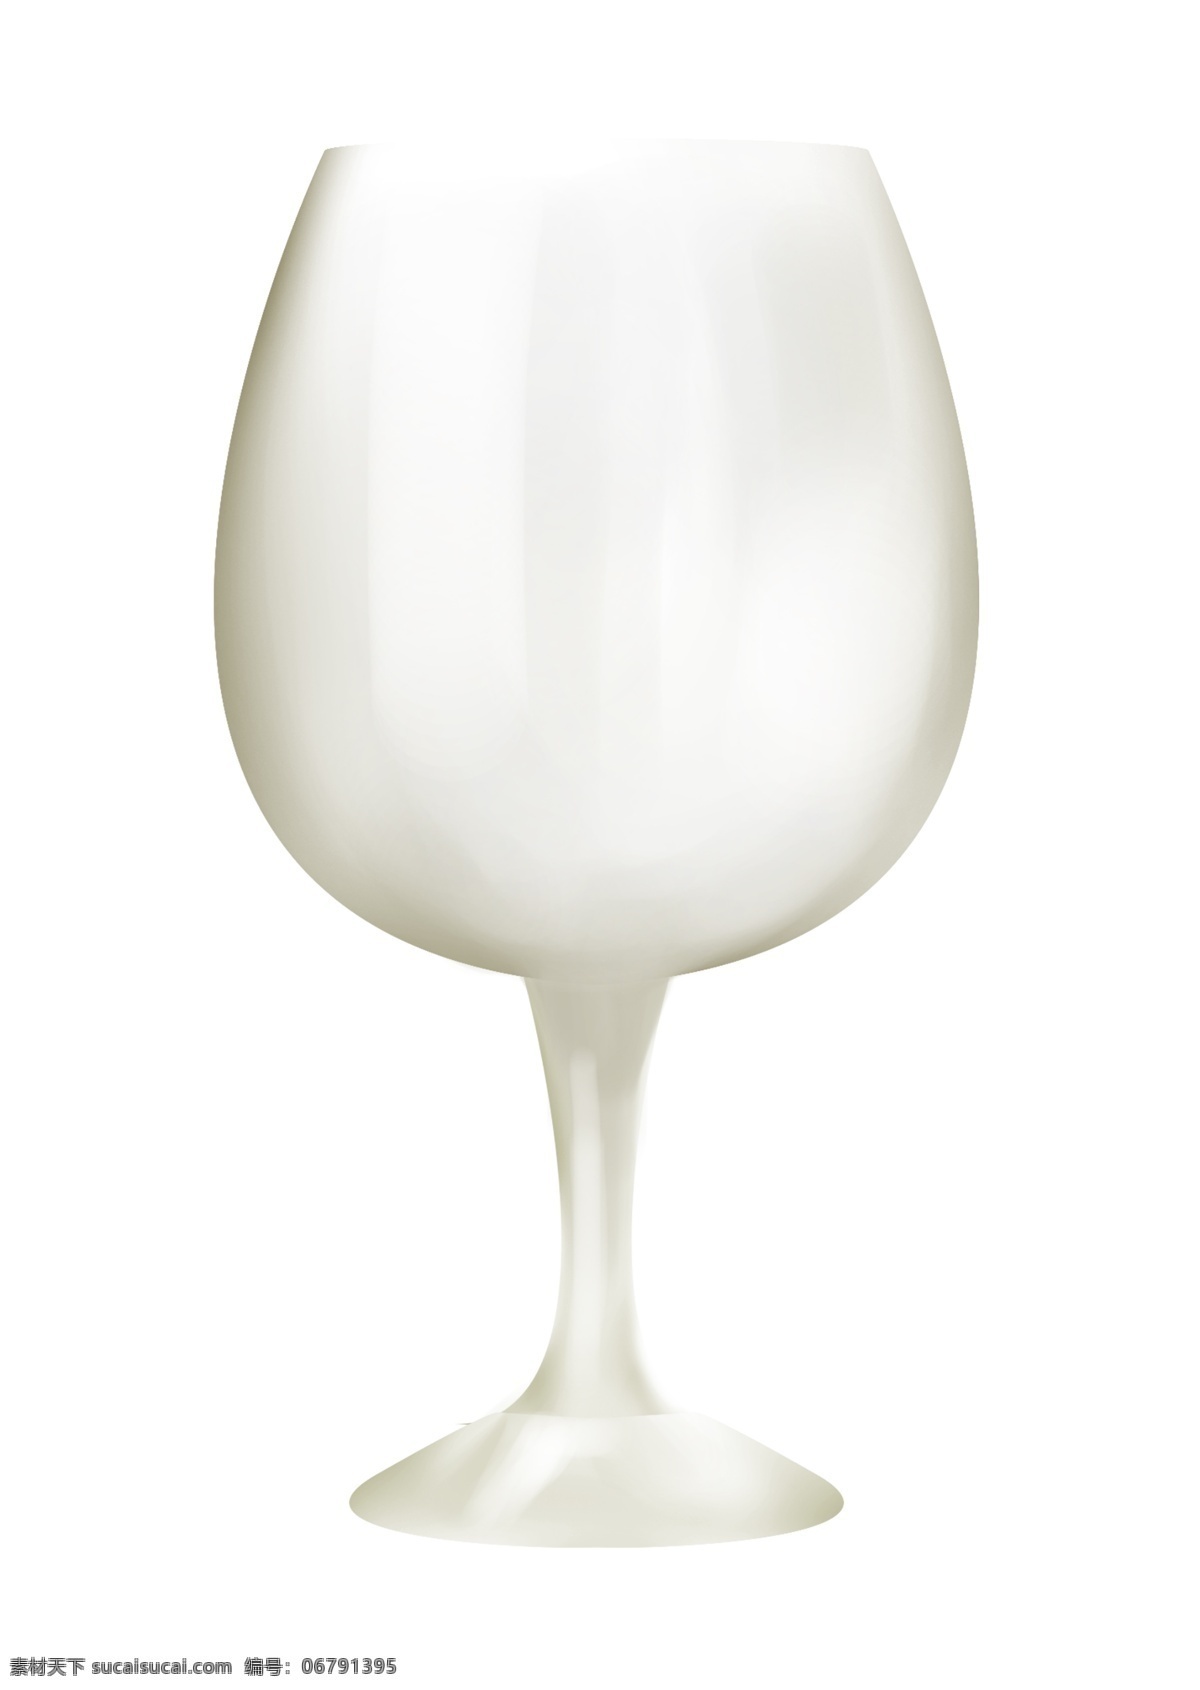 玻璃 红酒 杯 器皿 插图 红酒杯 红酒杯器皿 玻璃器皿 玻璃容器 杯子 酒杯 透明的杯子 玻璃杯